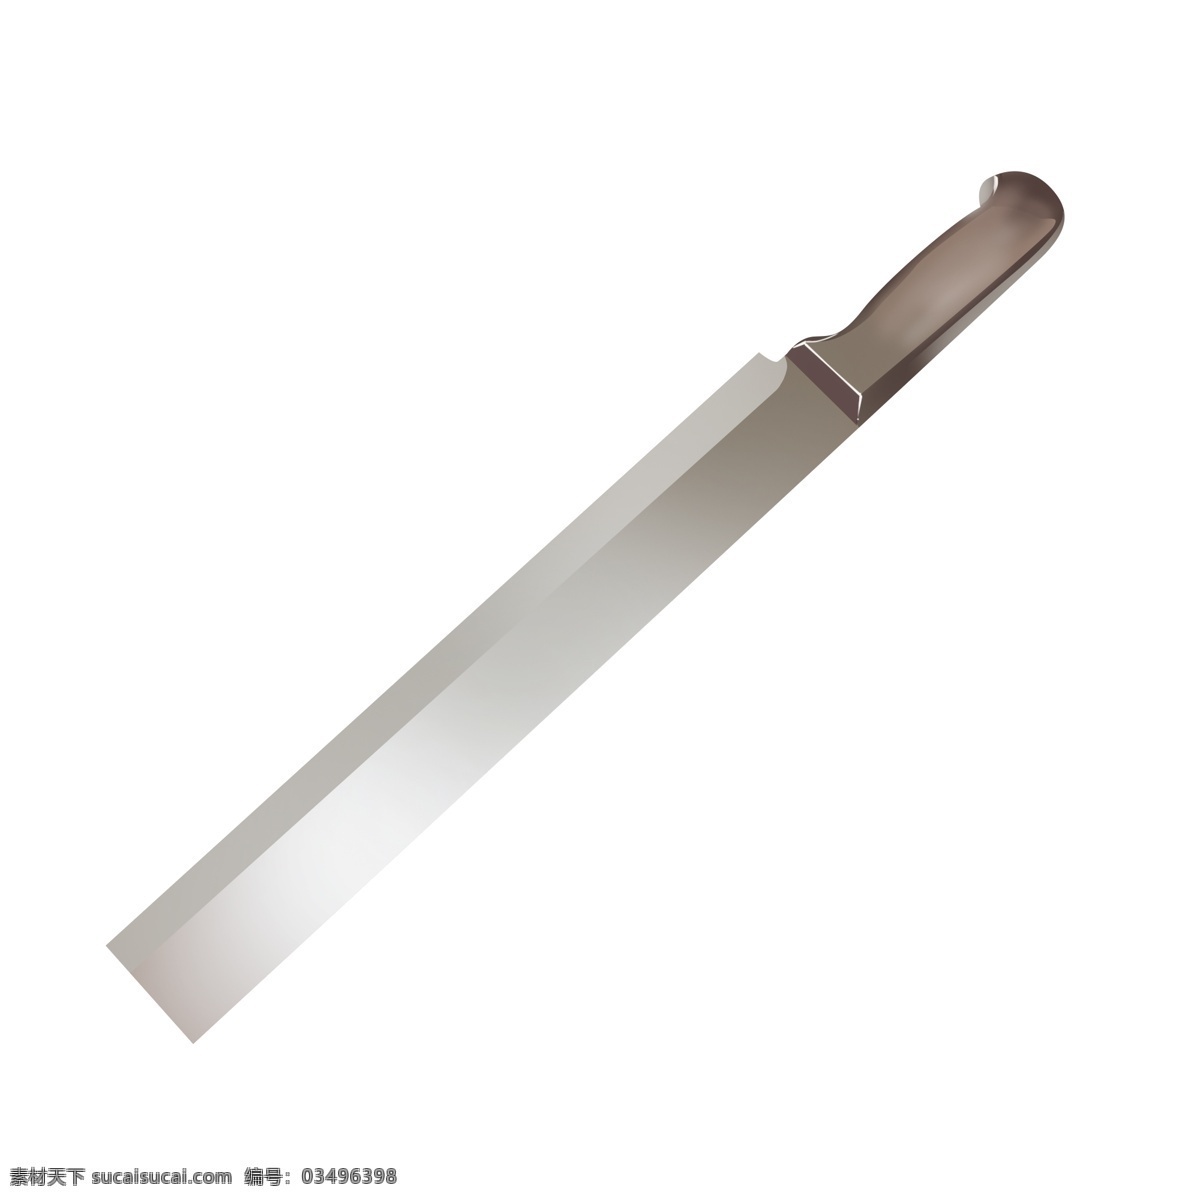 银色 西瓜刀 水果刀 透明 底 加长 时尚 美观 视觉 造型 金属 铁质 锋利西瓜刀